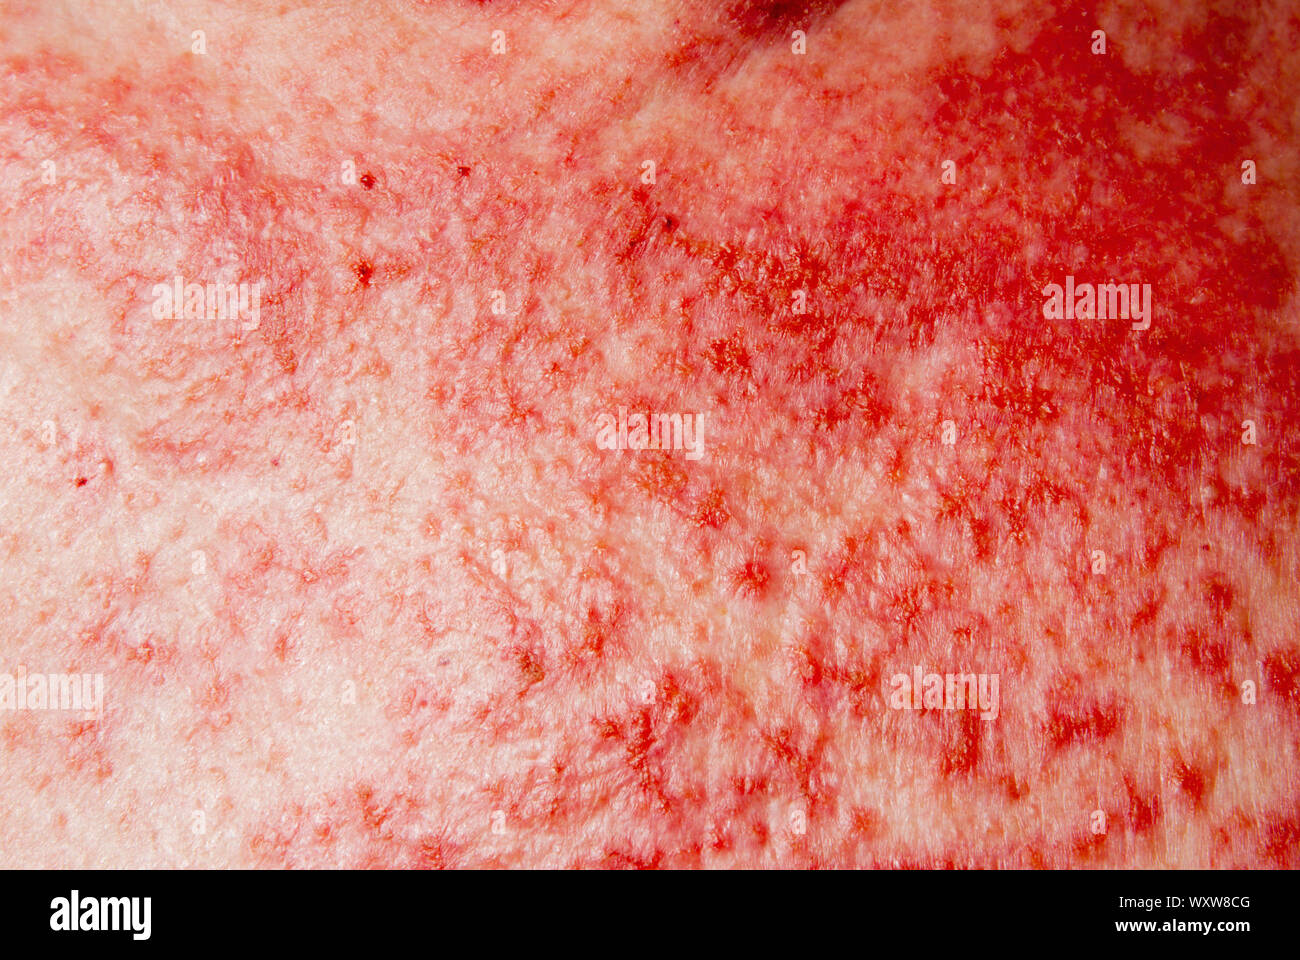 El carcinoma de células basales cáncer de piel tratada con 5% de fluorouracilo ungüento tópico medicina. Foto de stock